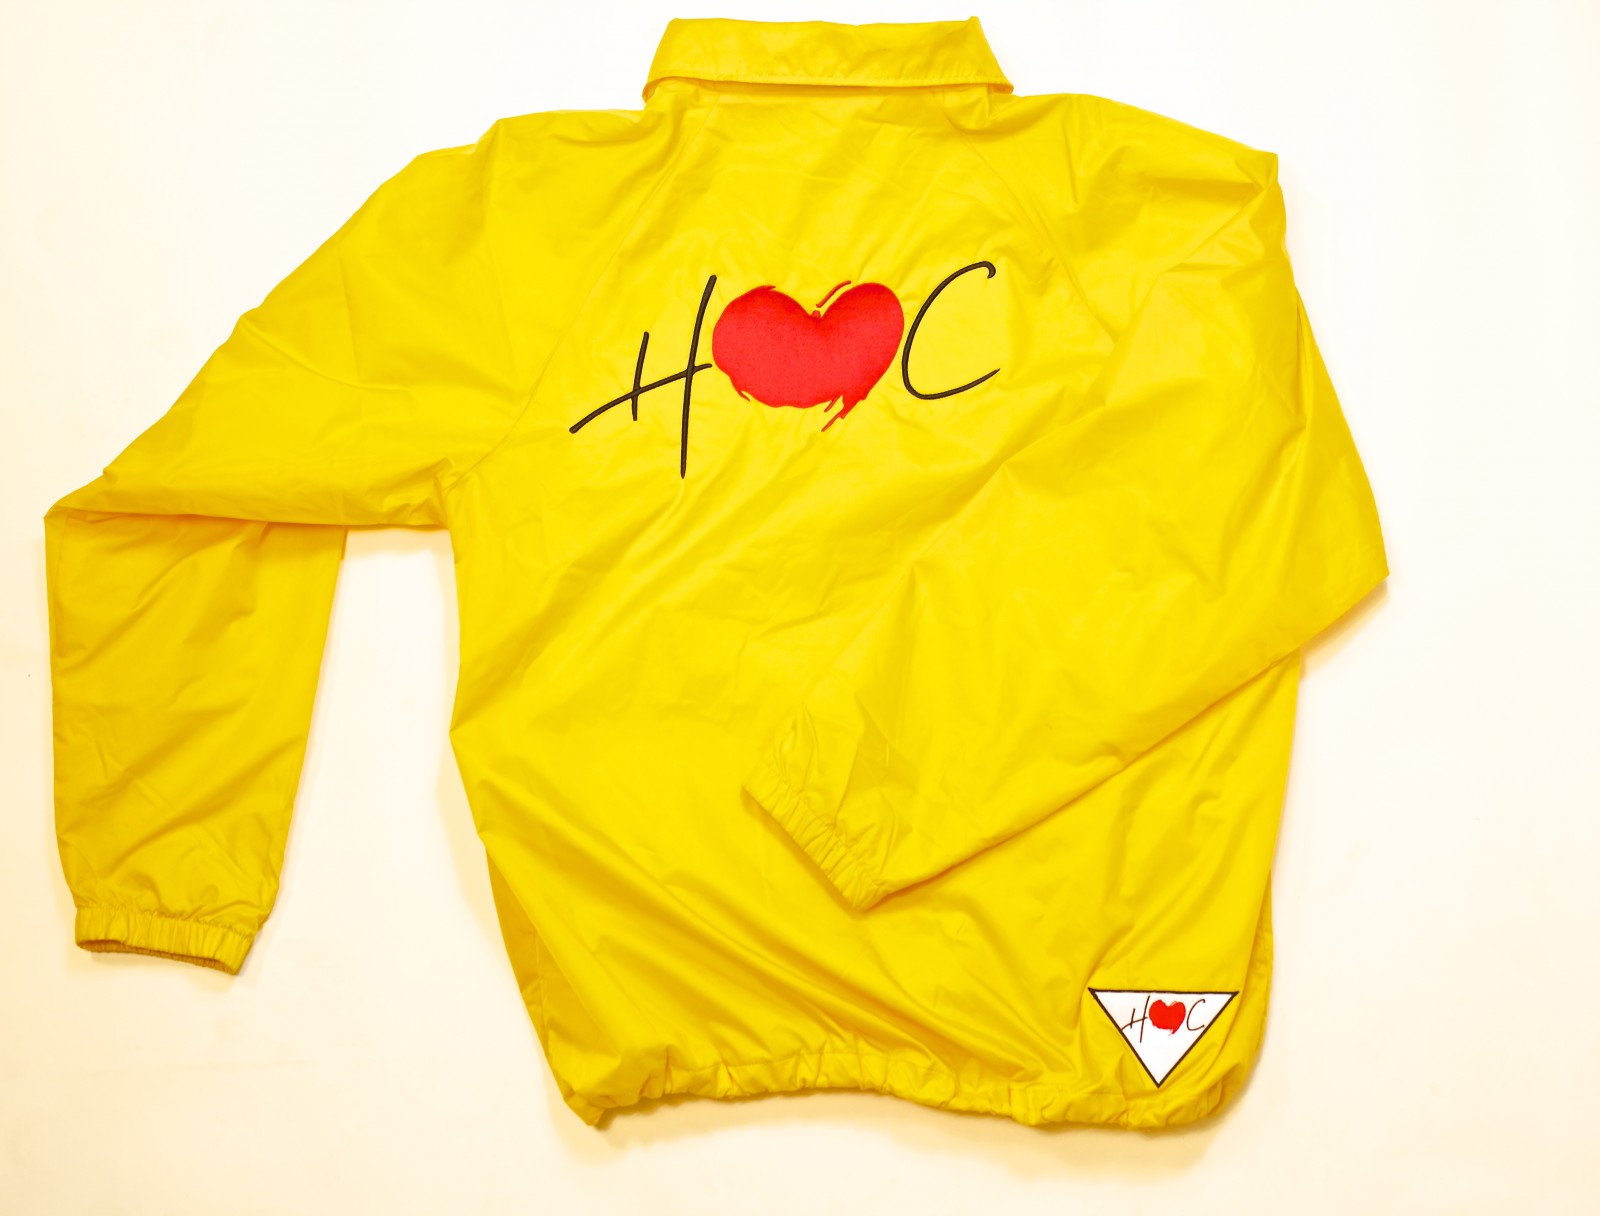 hoc-coaches-jacket